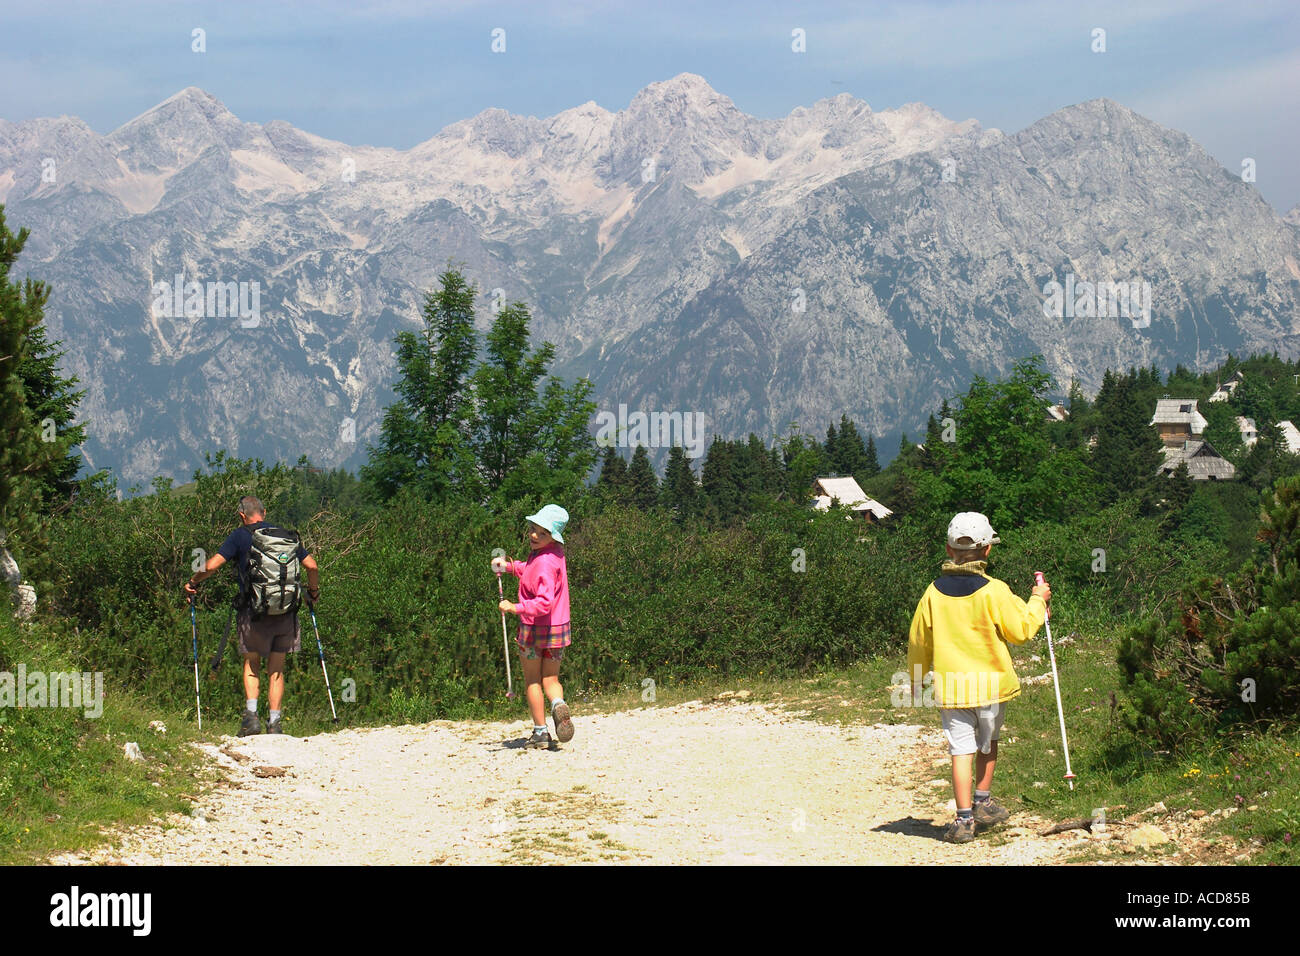 Wanderer im Almgebiet Velika planina in Steiner Alpen Oberkrain Slowenien Slovenia Foto Stock